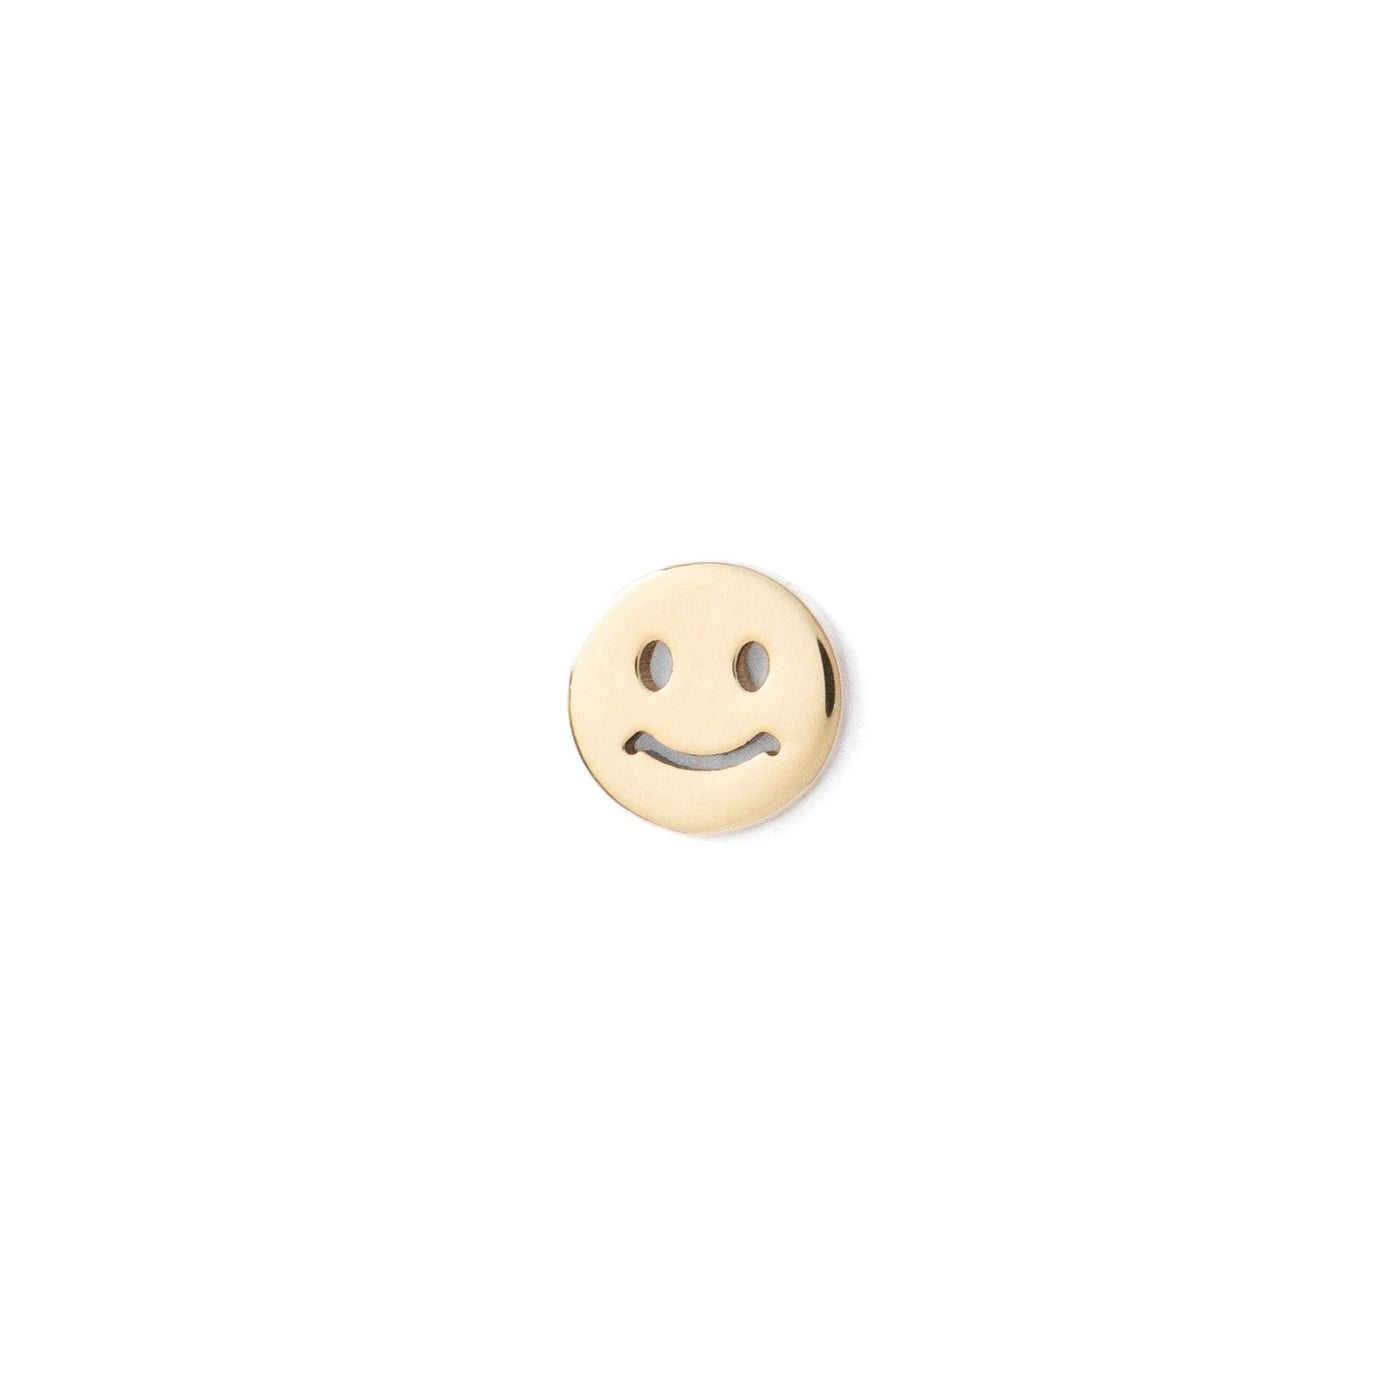 Smiley Threadless Pin